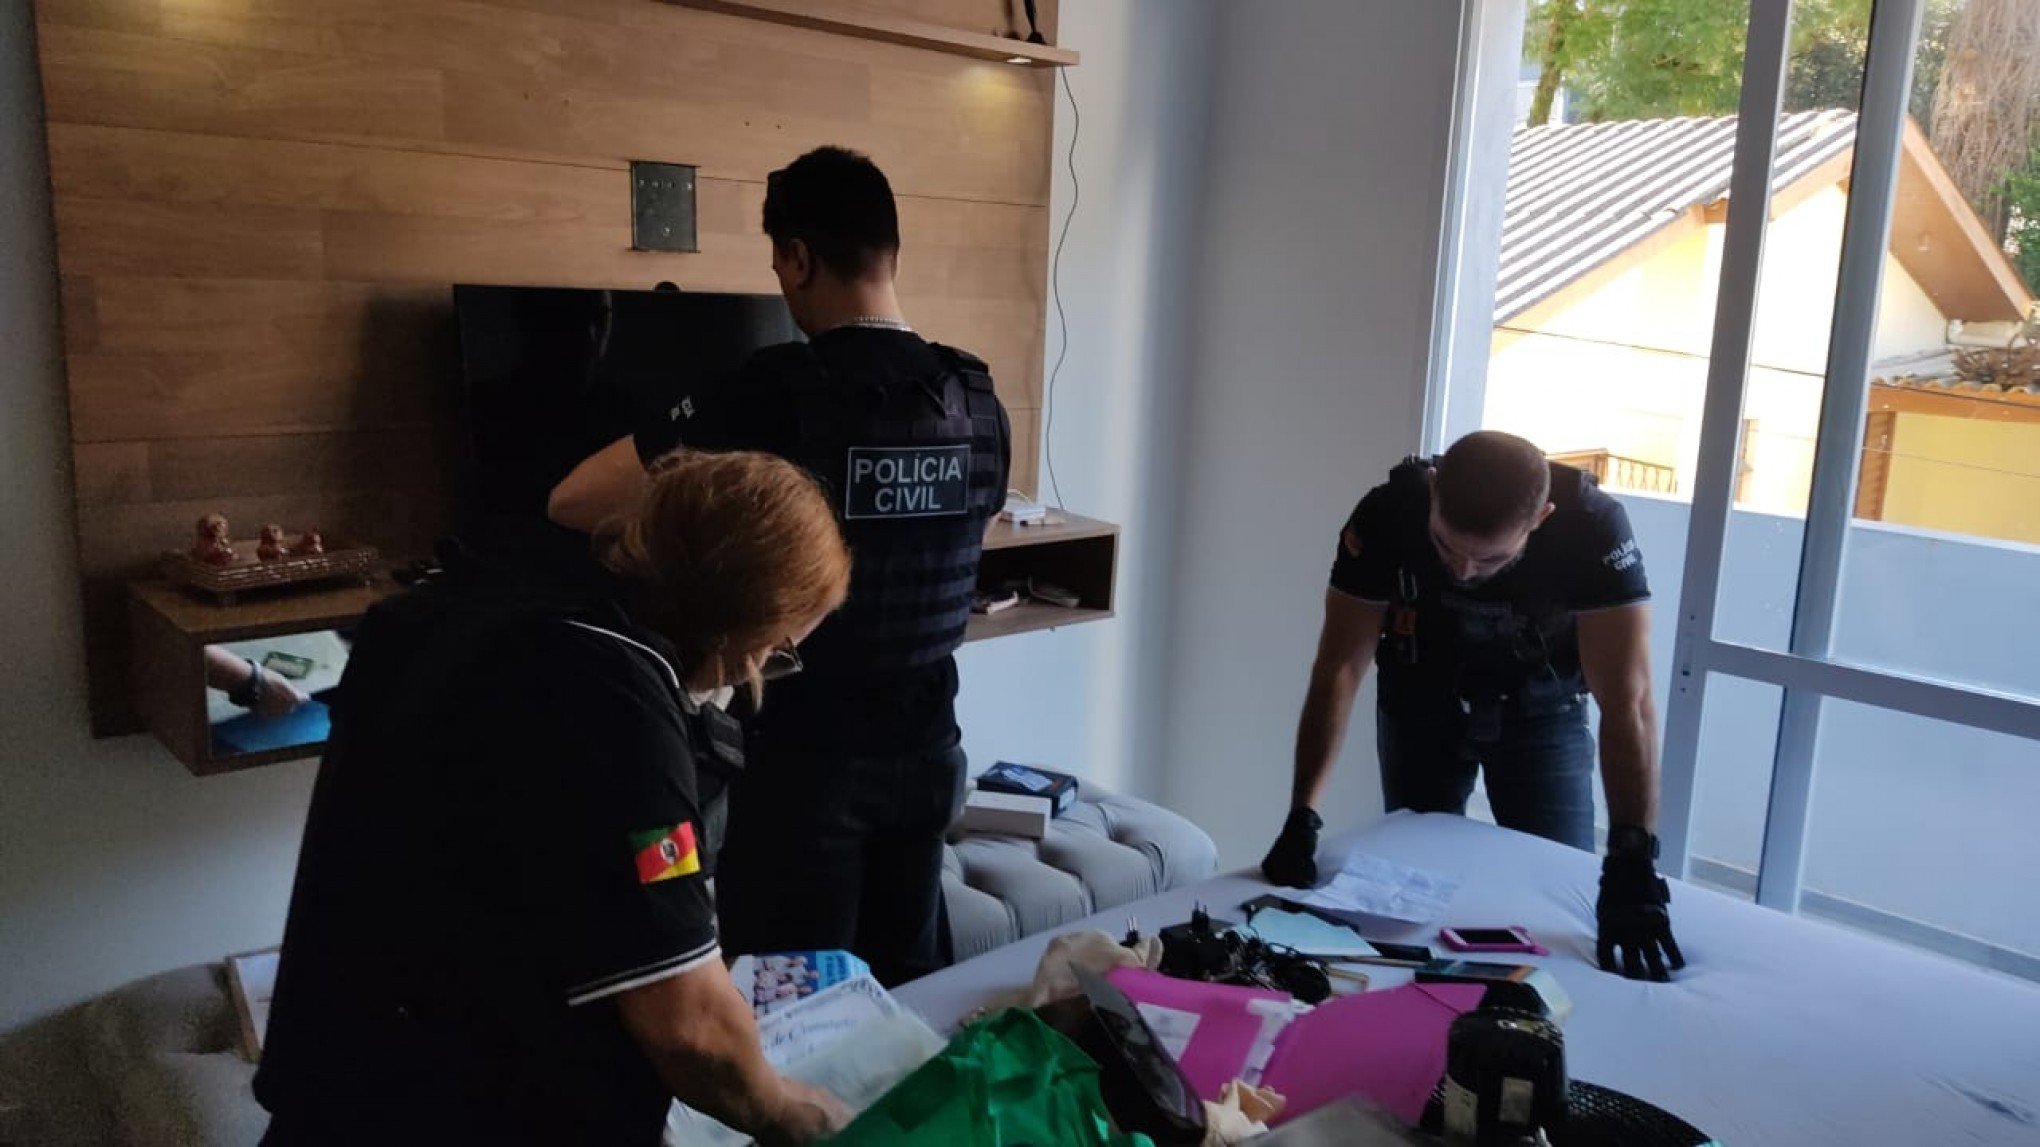 Celulares, drogas e máquina de cartão são apreendidos em operação contra crimes de extorsão e estupro registrados em Novo Hamburgo